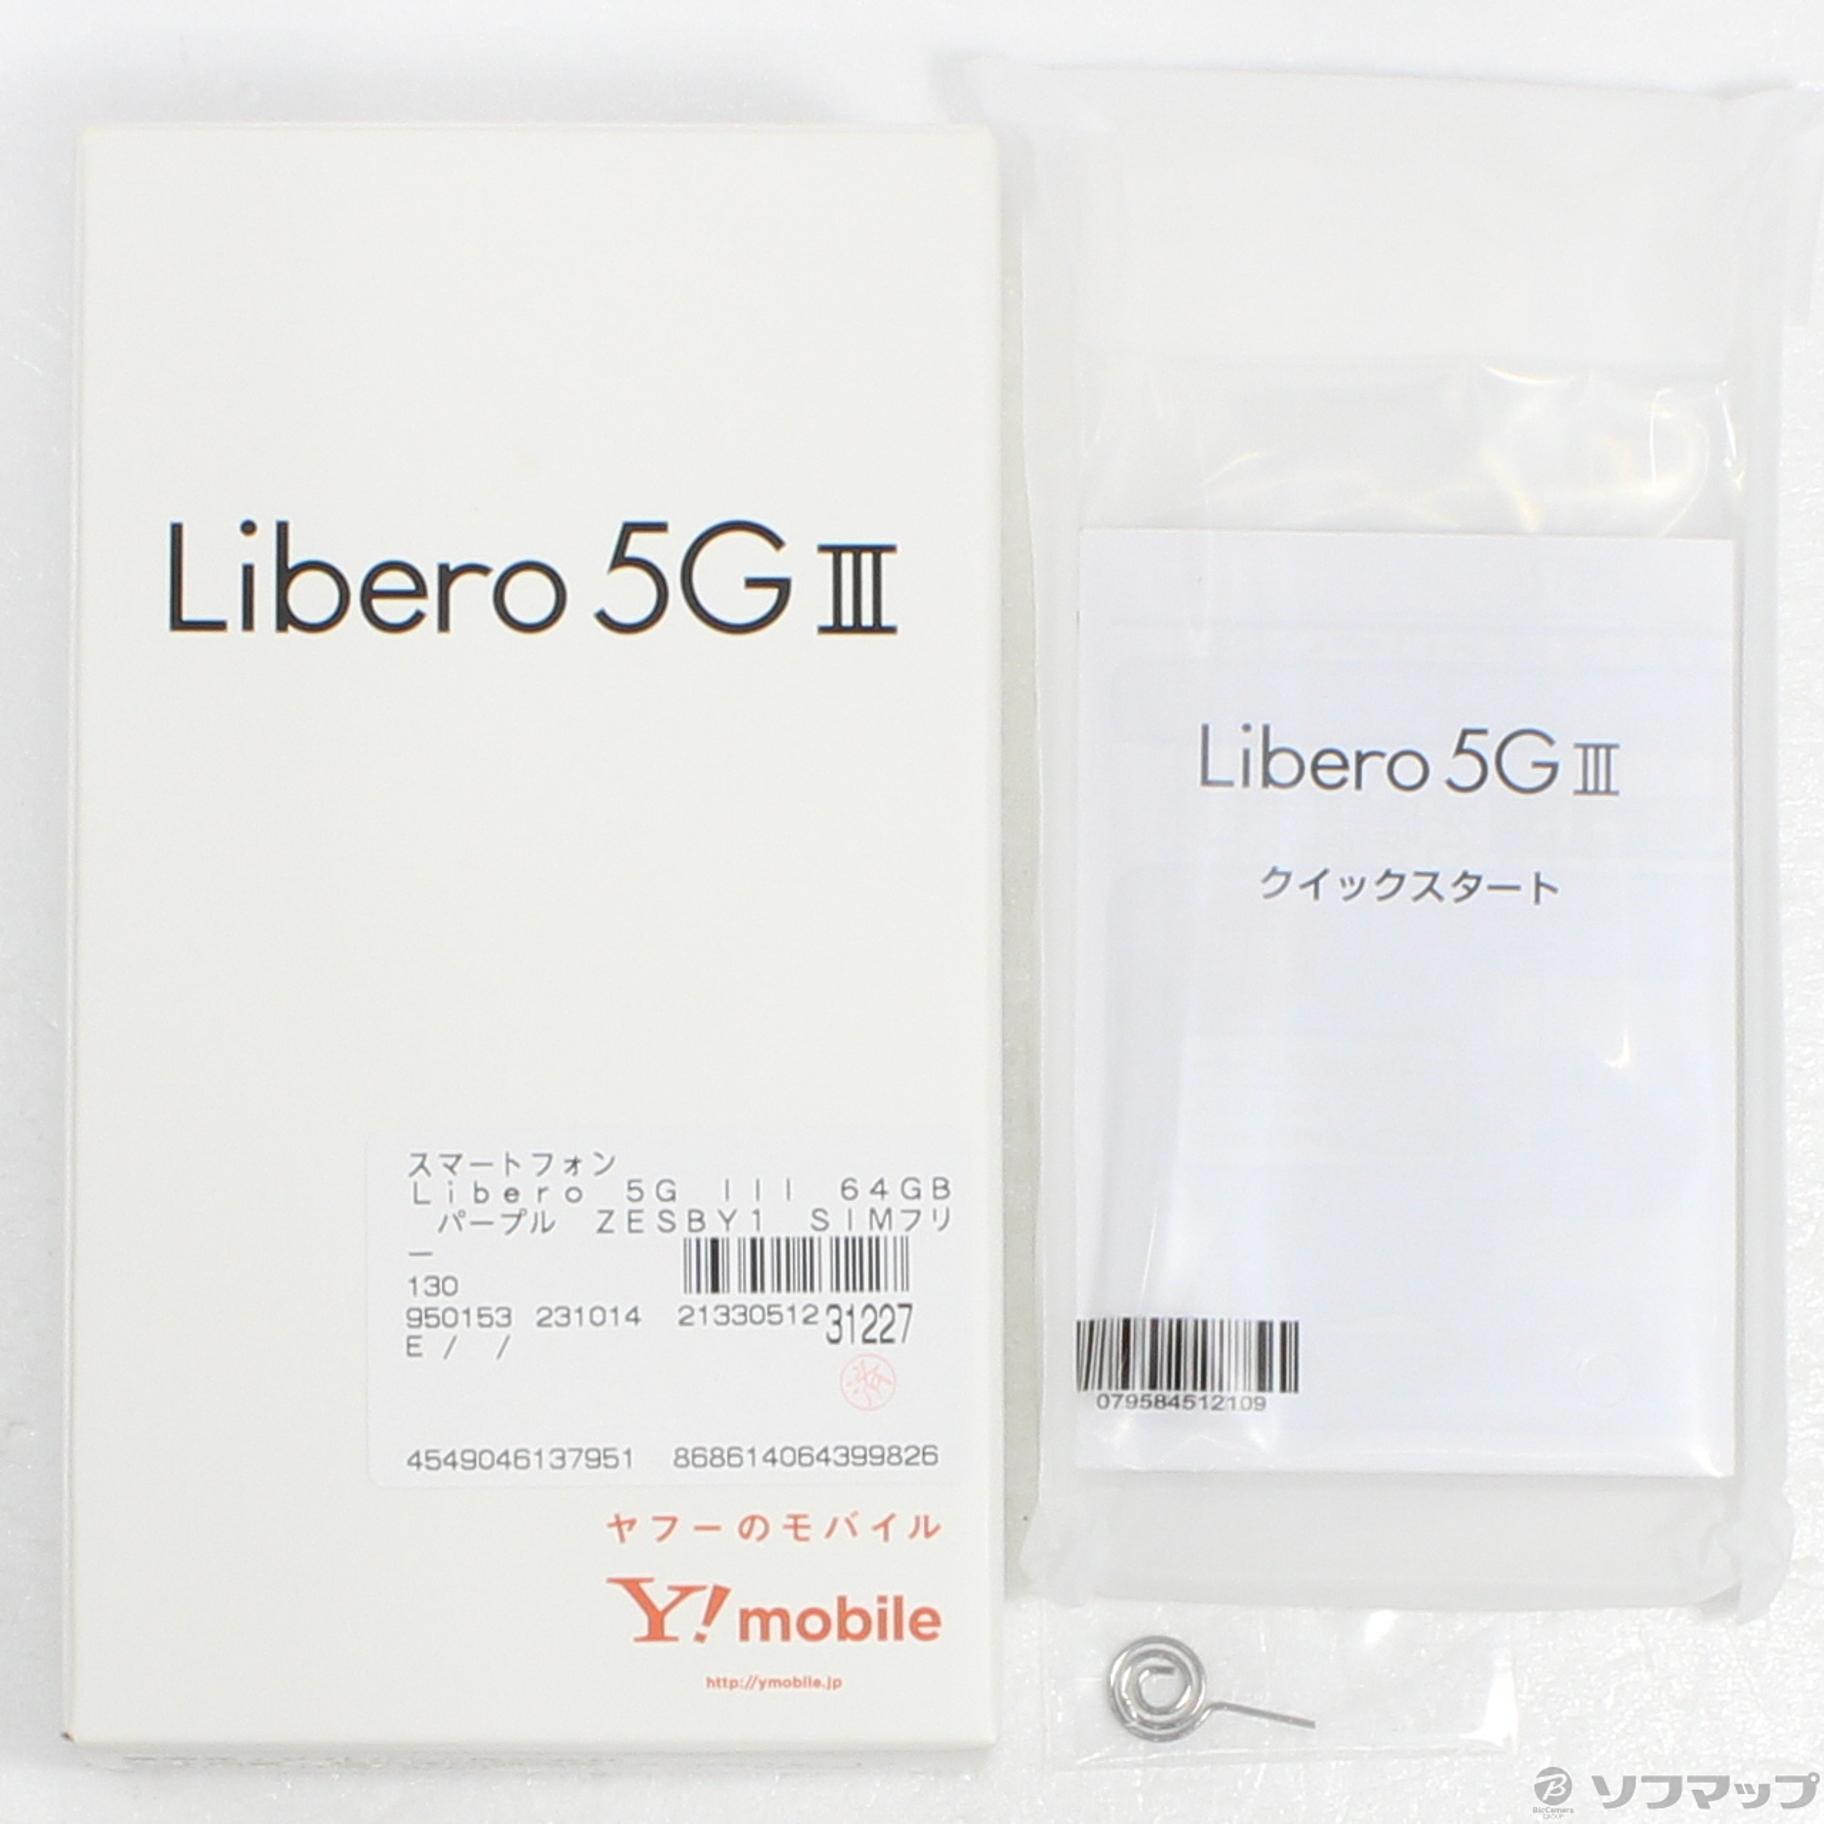 中古】Libero 5G III 64GB パープル ZESBY1 SIMフリー [2133051231227